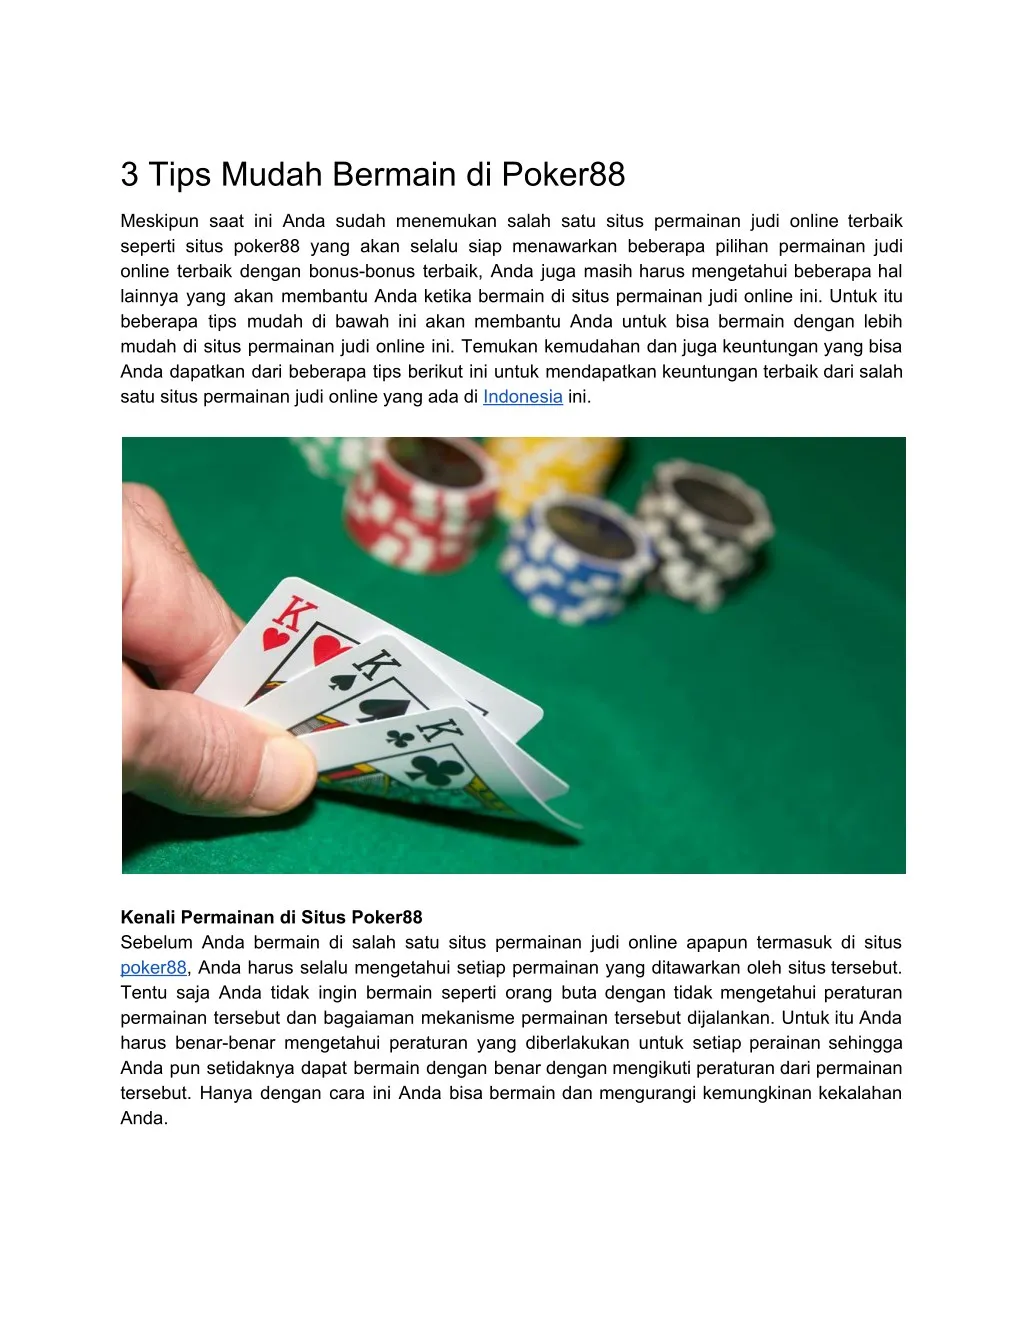 3 tips mudah bermain di poker88